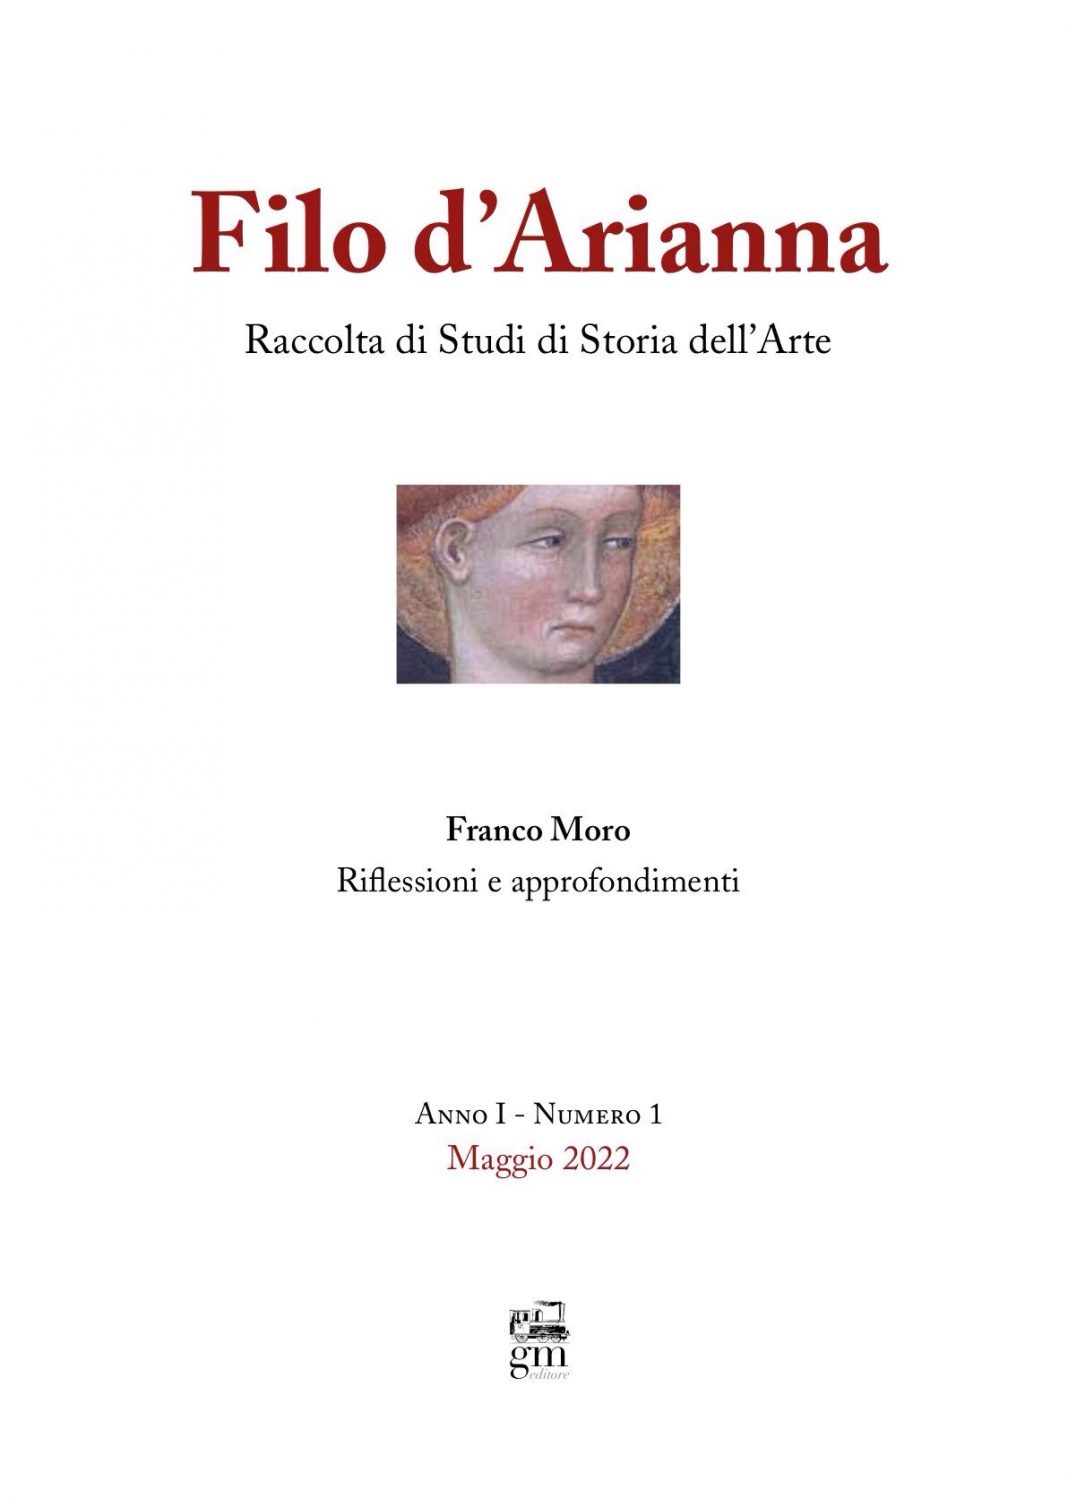 Presentazione del primo numero di Filo d’Ariannahttps://www.exibart.com/repository/media/formidable/11/img/6d3/02.-Filo-dArianna-copertina-1068x1498.jpg